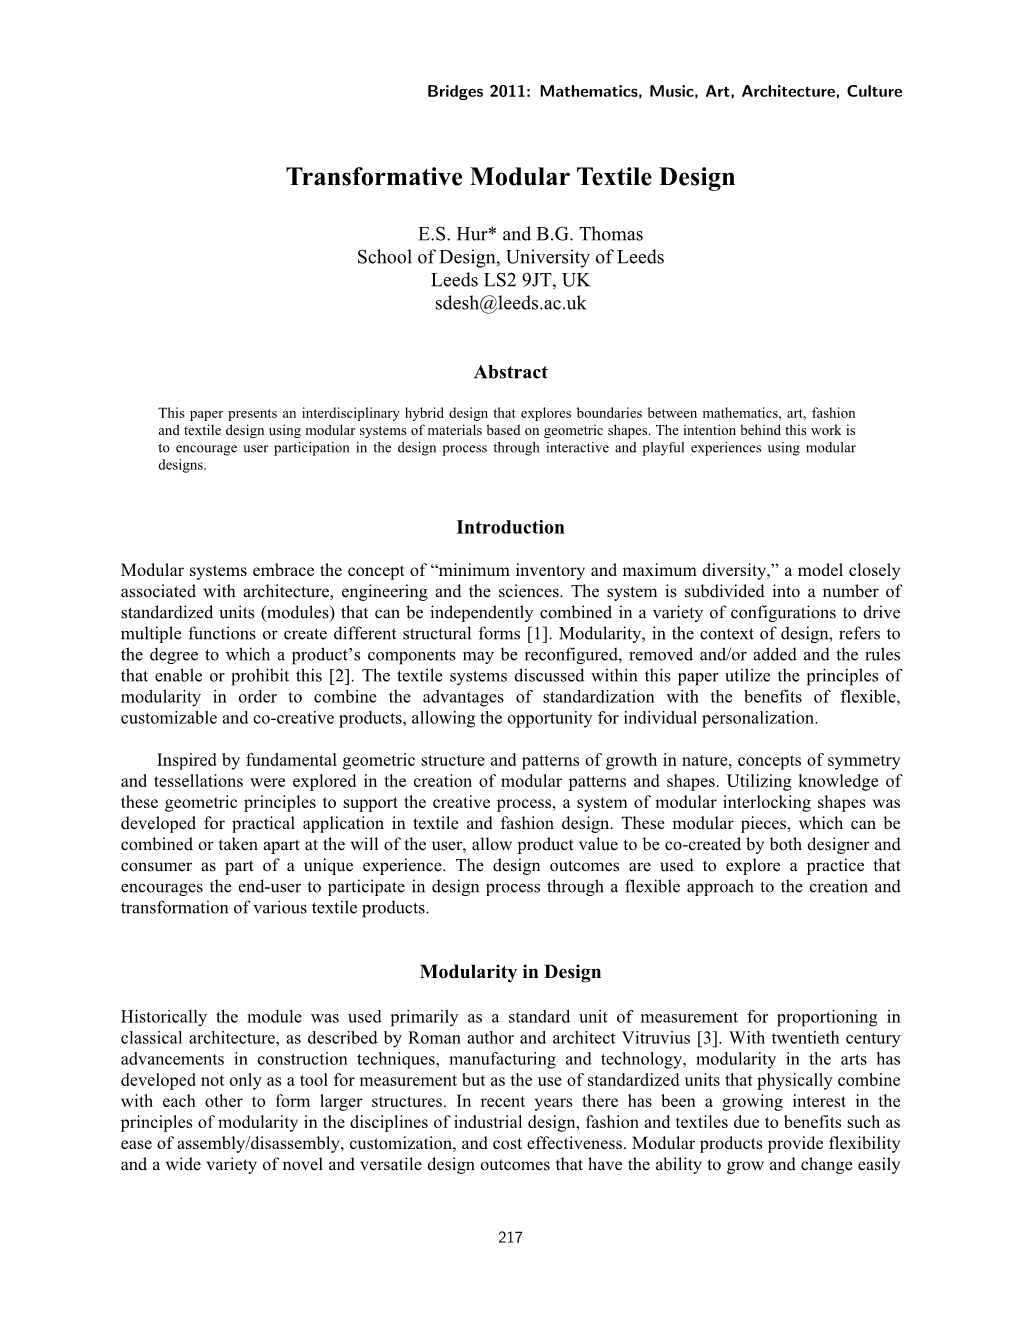 Transformative Modular Textile Design